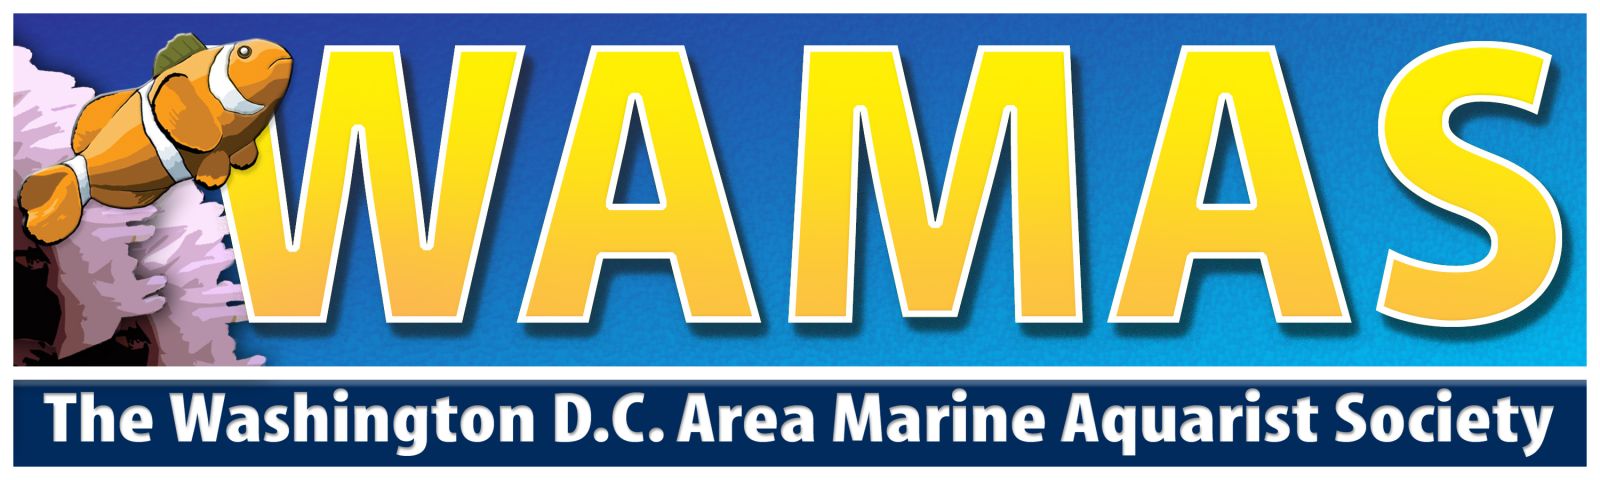 SCCC Marine Lab Recieves WAMAS Grant